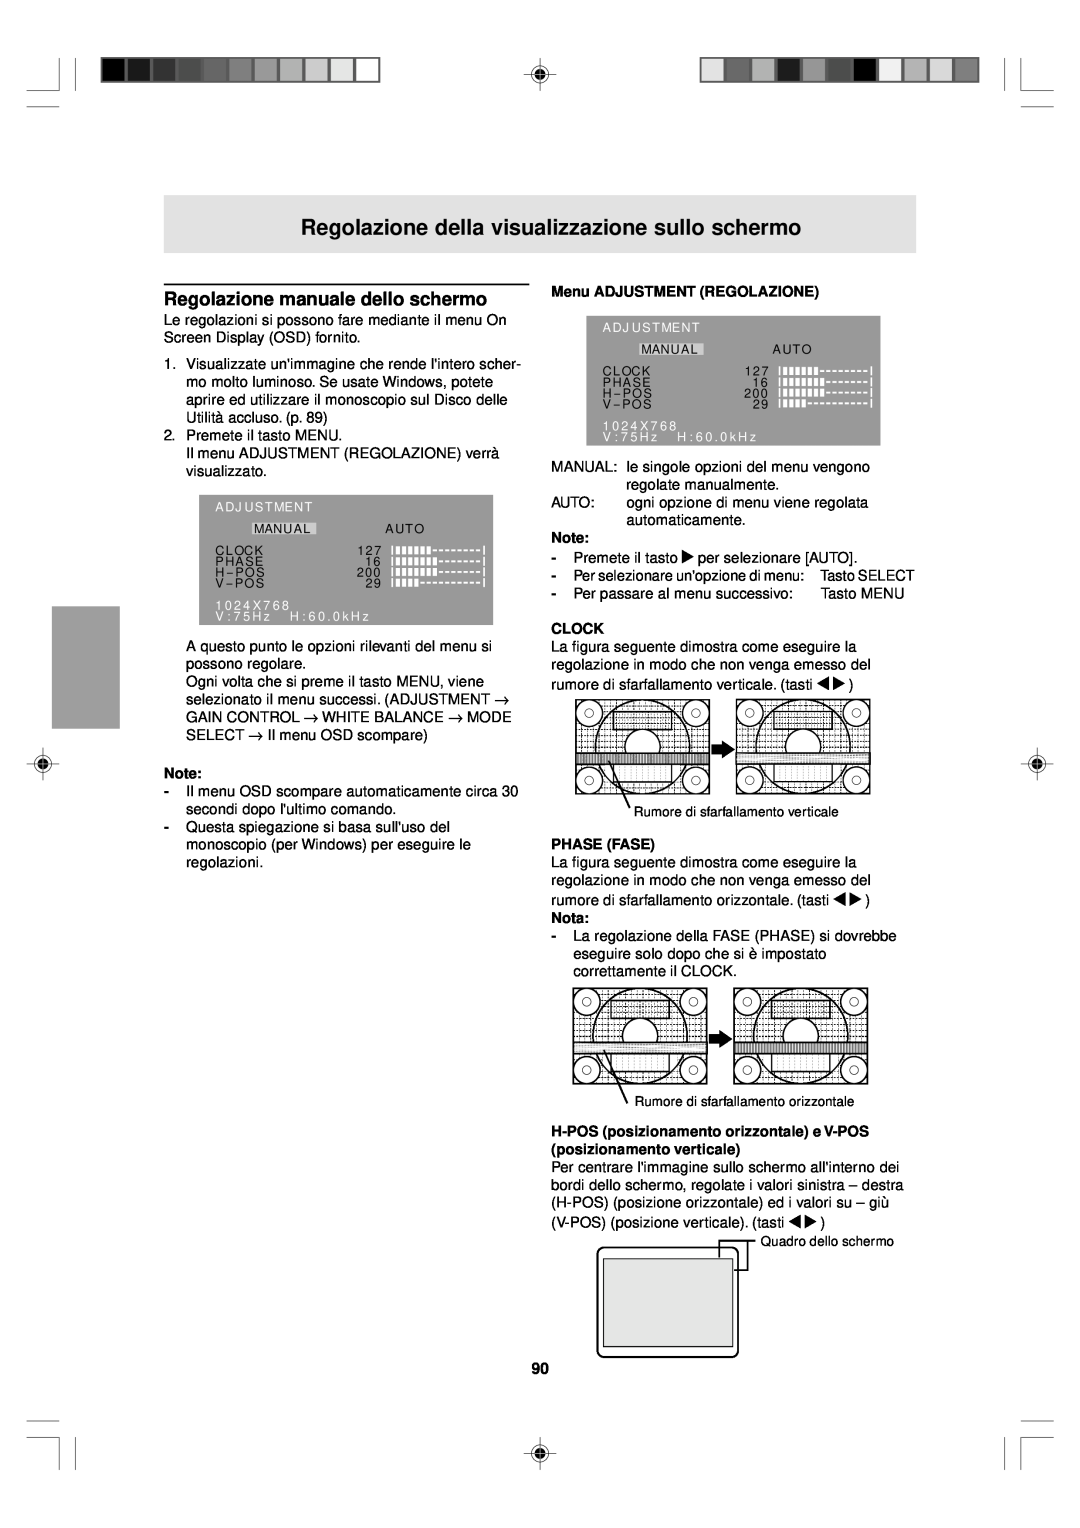 Sharp LL-T15V1 operation manual Regolazione manuale dello schermo, Menu ADJUSTMENT REGOLAZIONE, Phase Fase, Clock, Nota 